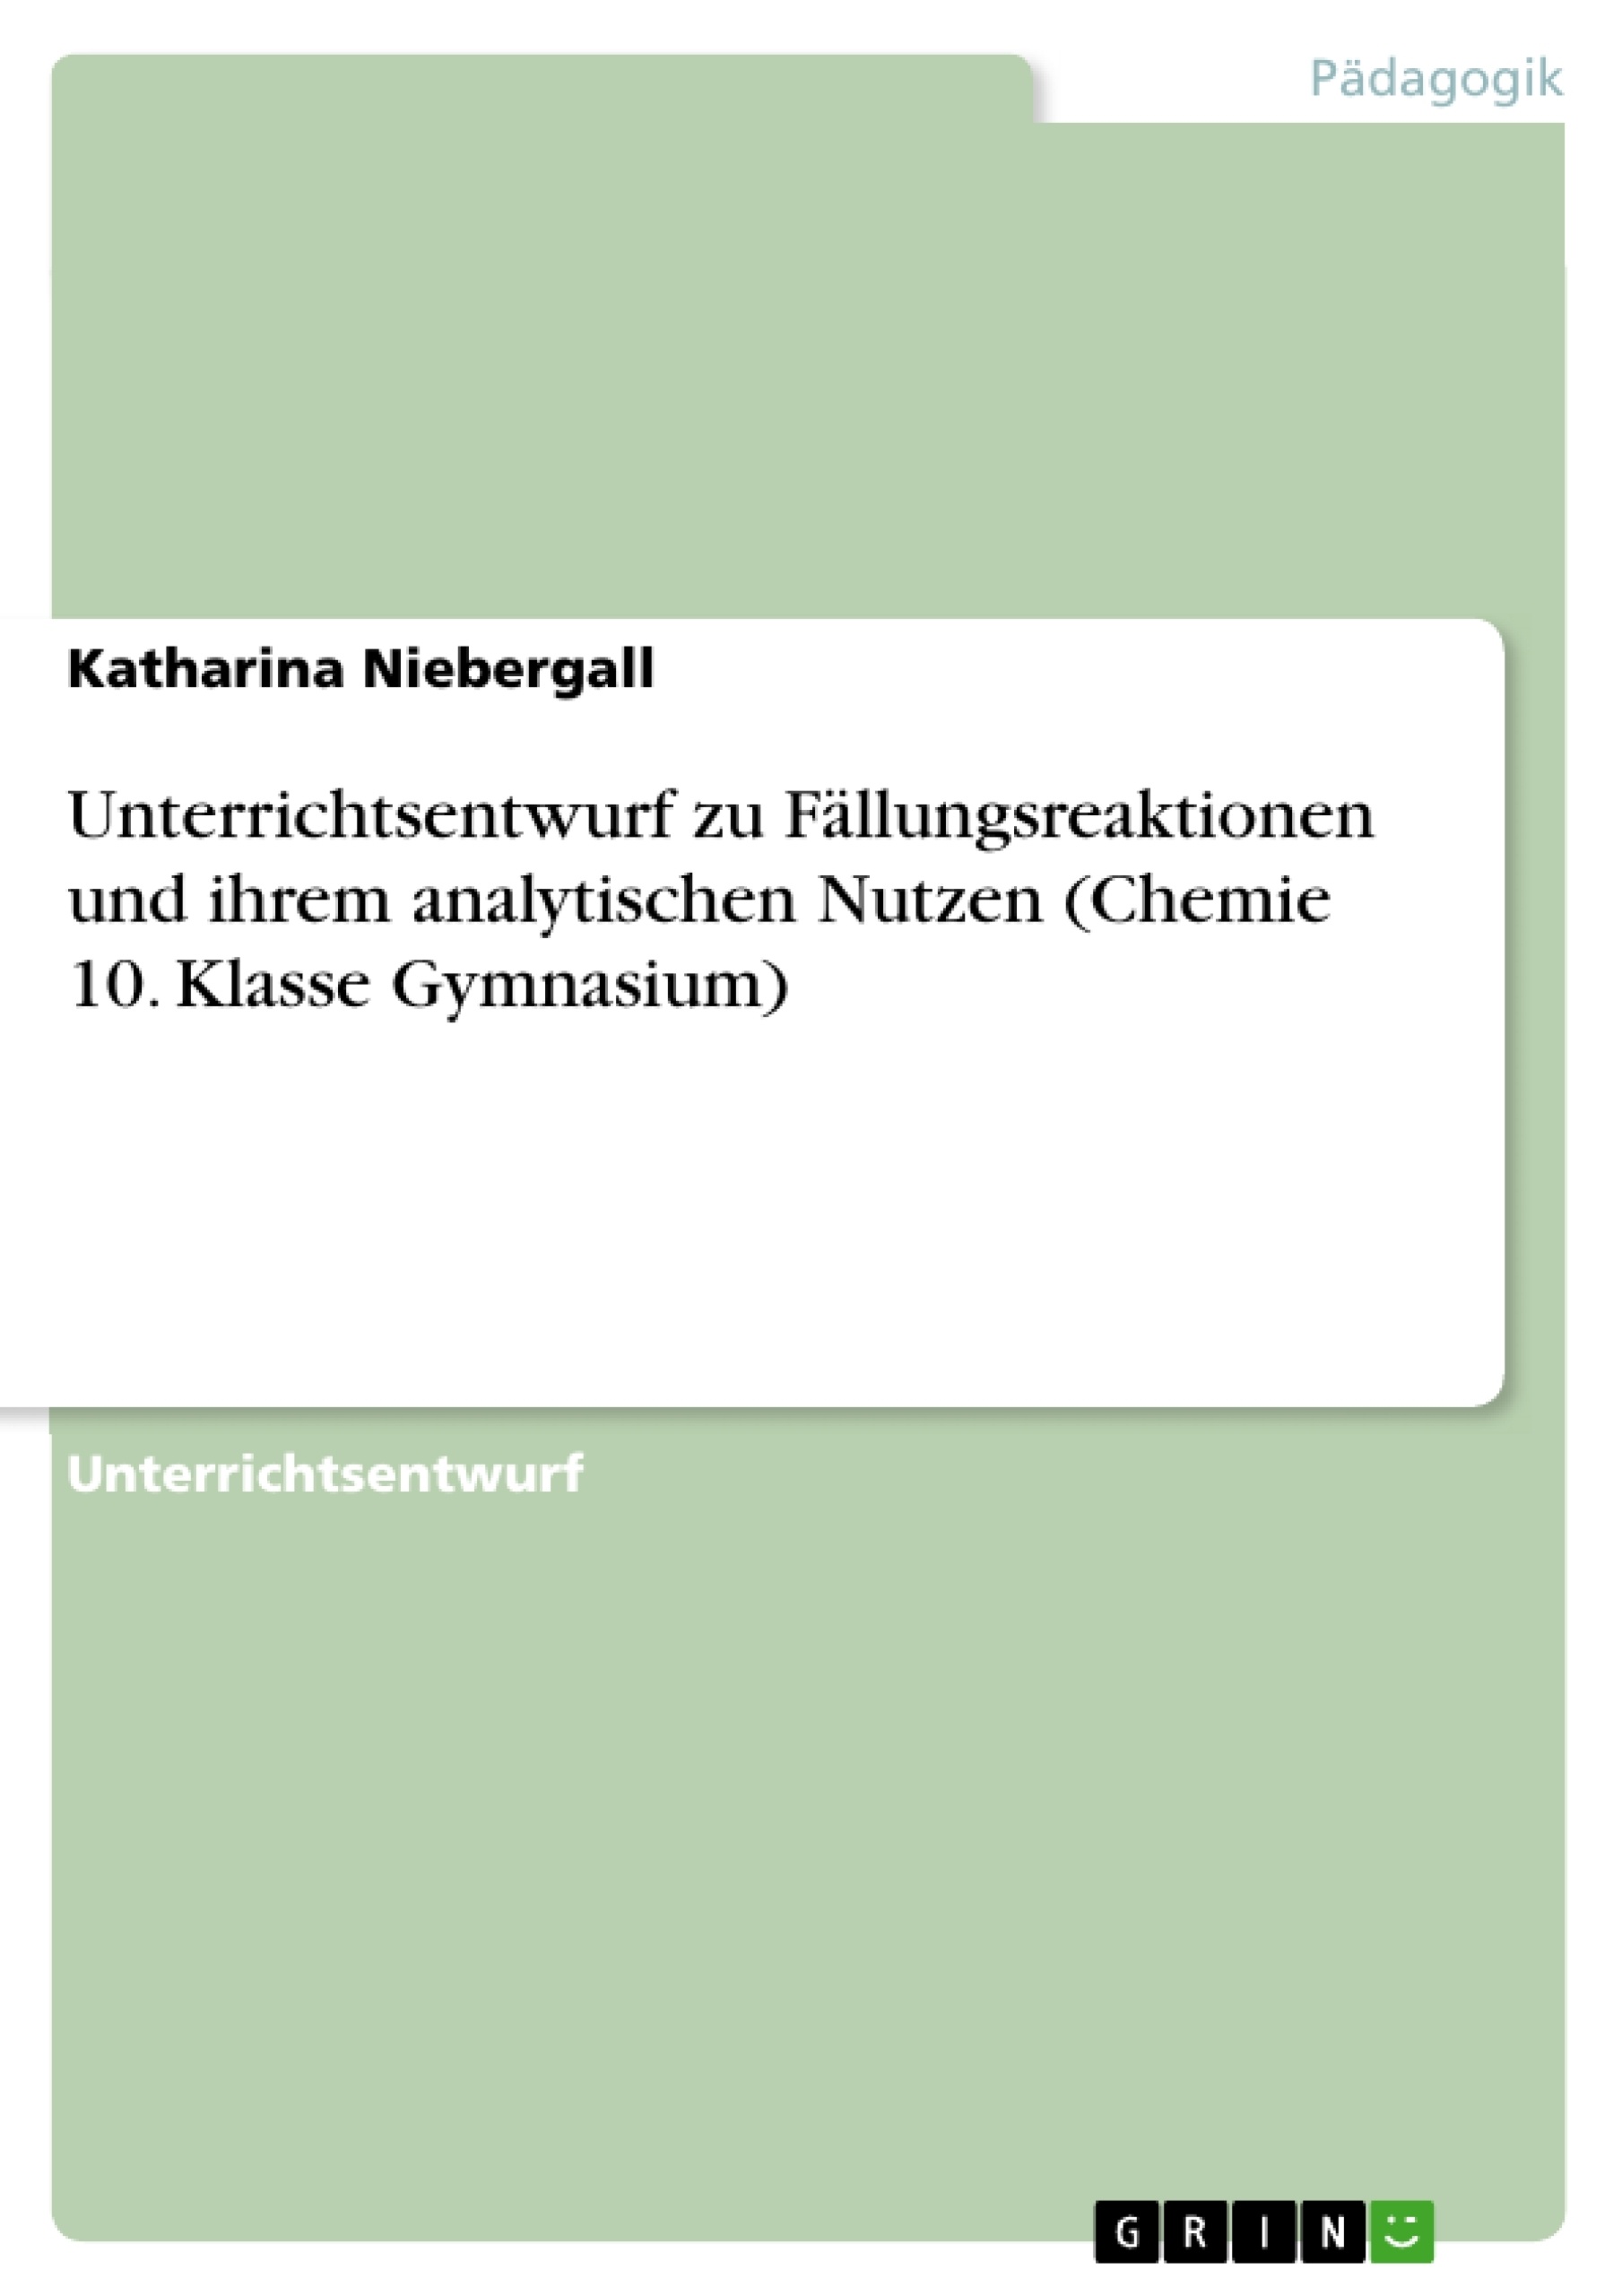 Title: Unterrichtsentwurf zu Fällungsreaktionen und ihrem analytischen Nutzen (Chemie 10. Klasse Gymnasium)